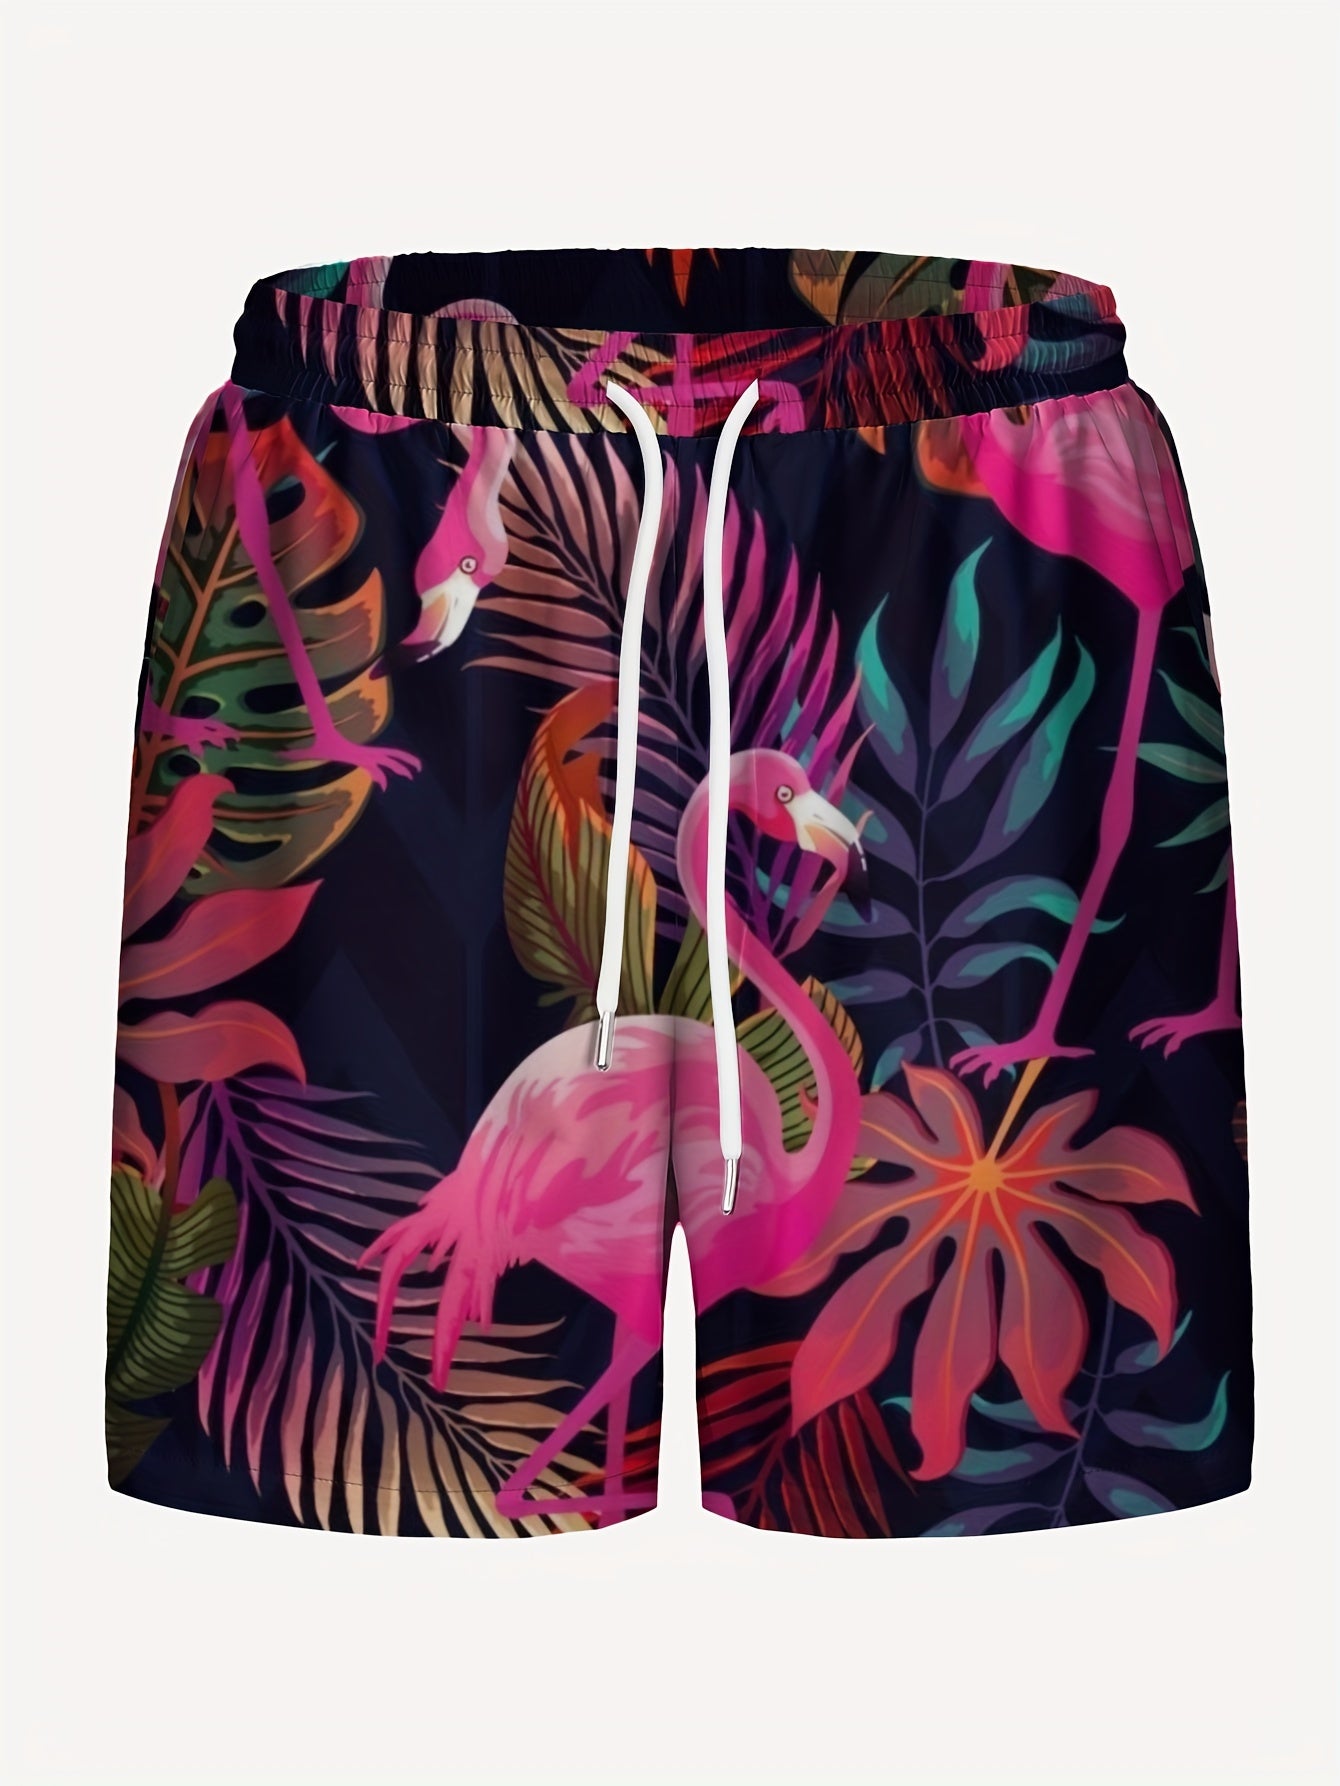 lockere Strandshorts ,Shorts mit Kordelzug und schnell trocknendem Flamingo-Muster, leichte Einzelschicht-Shorts ohne Netzinnenfutter